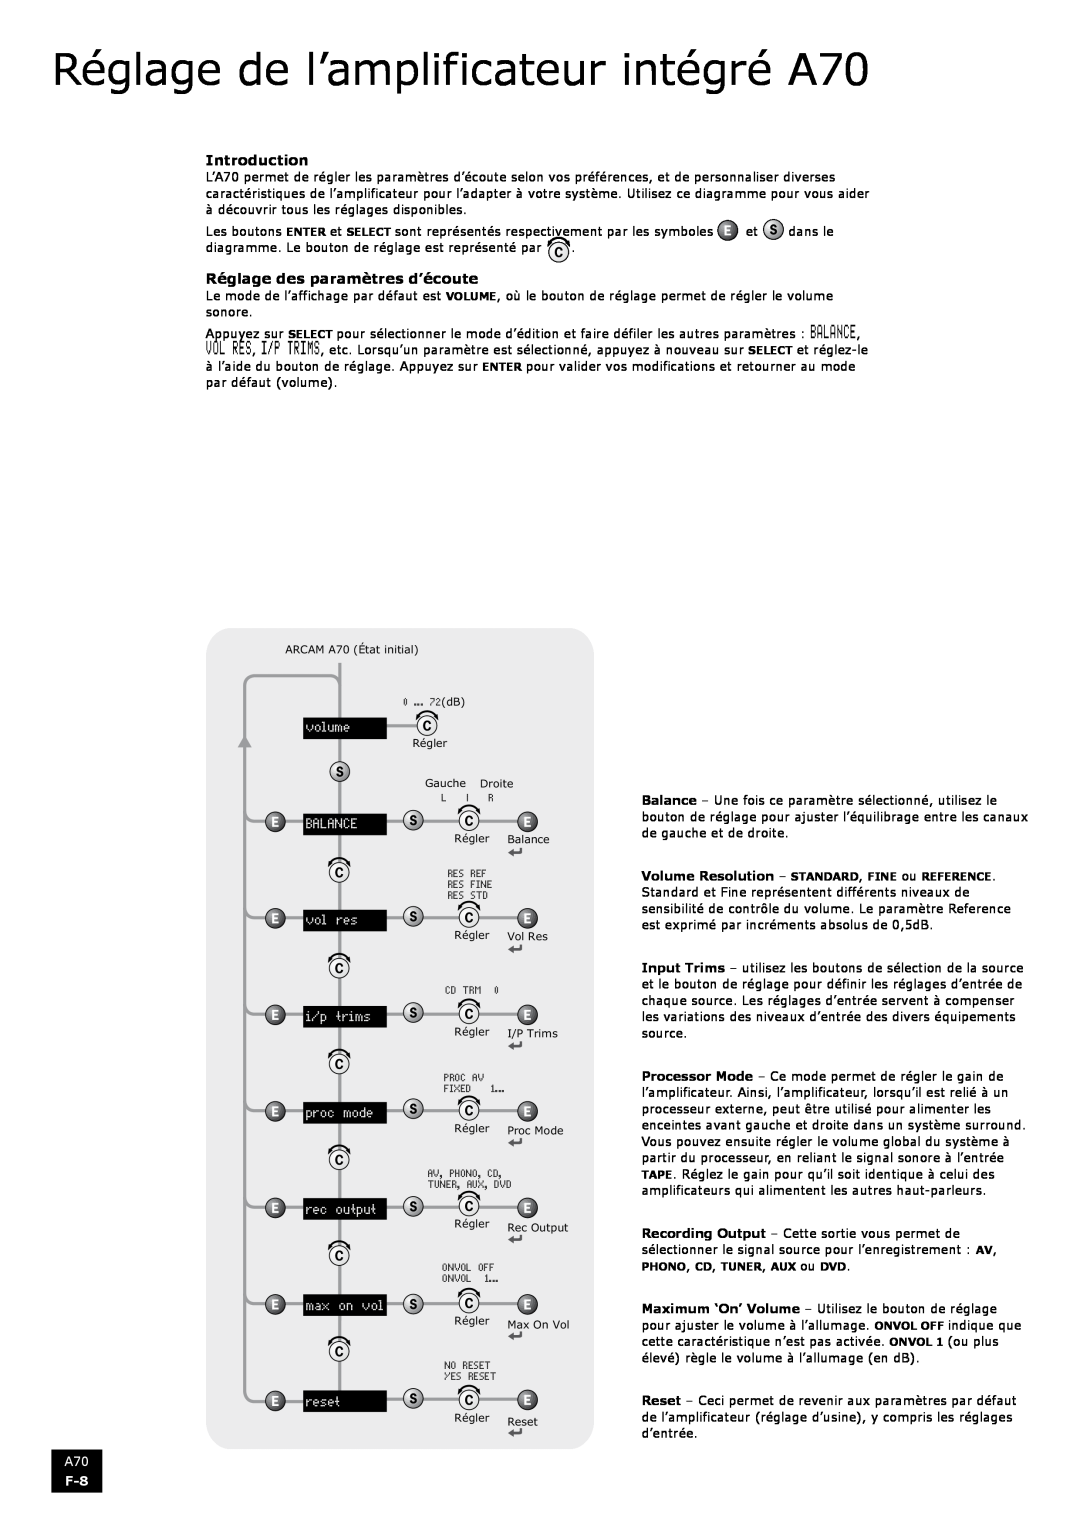 Arcam manual Réglage de l’amplificateur intégré A70, Introduction, Réglage des paramètres d’écoute 